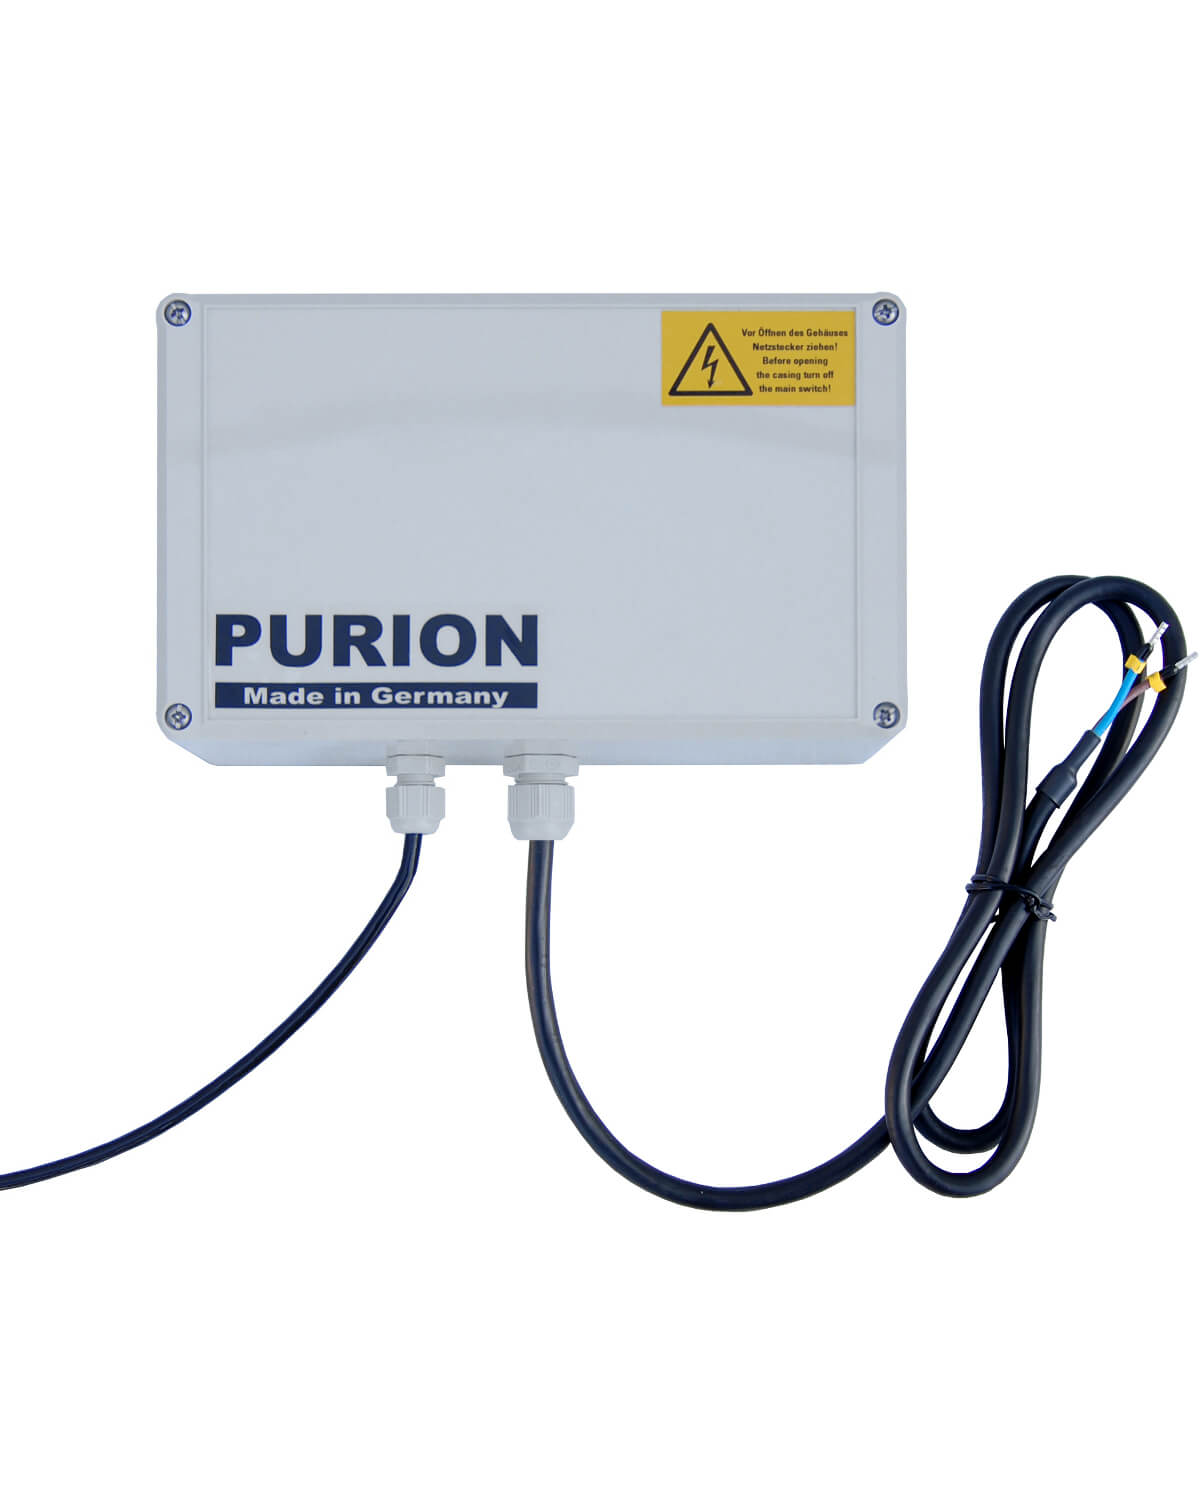 PURION 400 12 V/24 V DC Basic